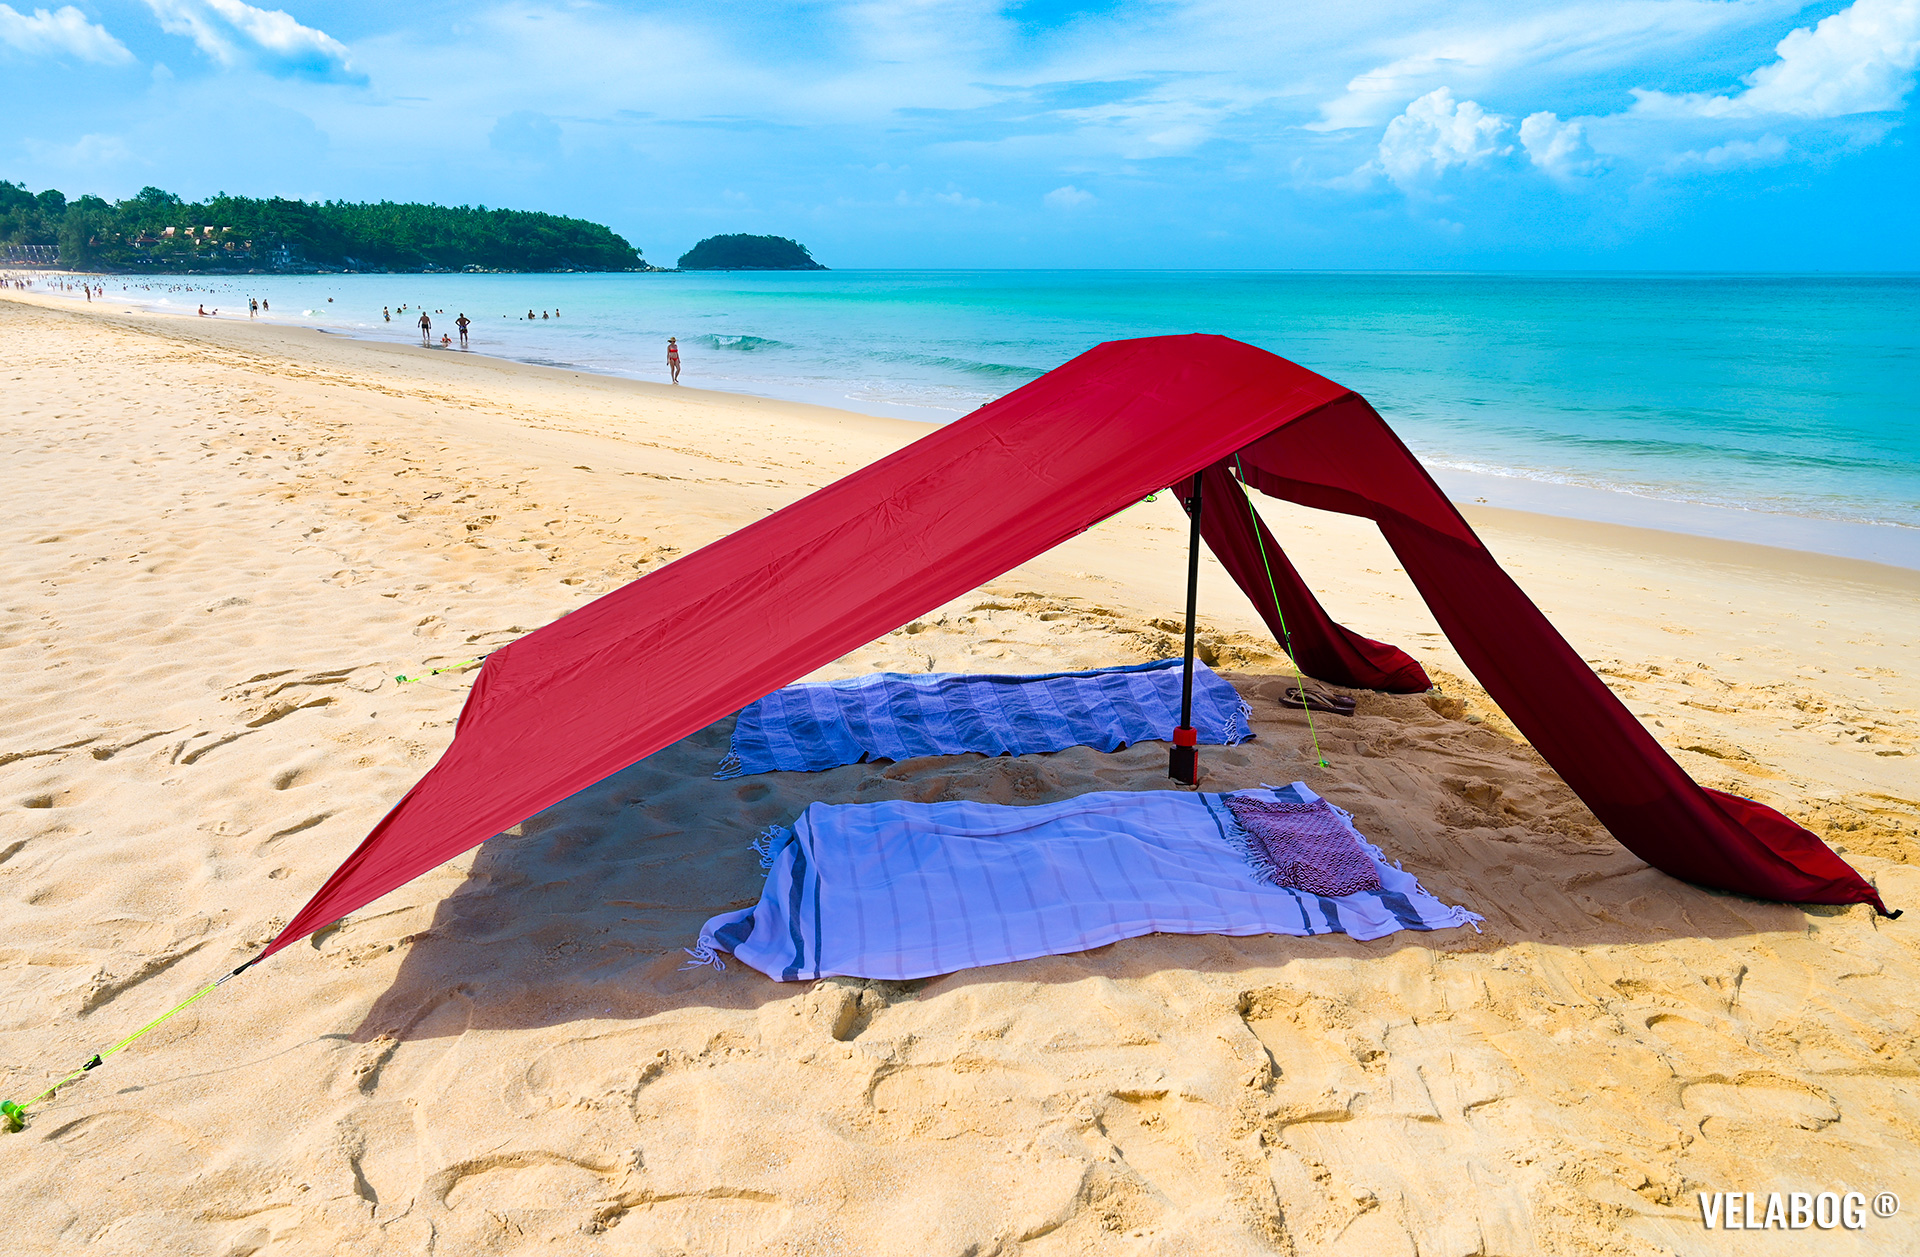 Солнечный парус Velabog «Breeze» красный. Лучшее укрытие от солнца и на безветренном пляже. Вариант установки при слабом или порывистом ветре или если ветра нет. Вид сбоку.